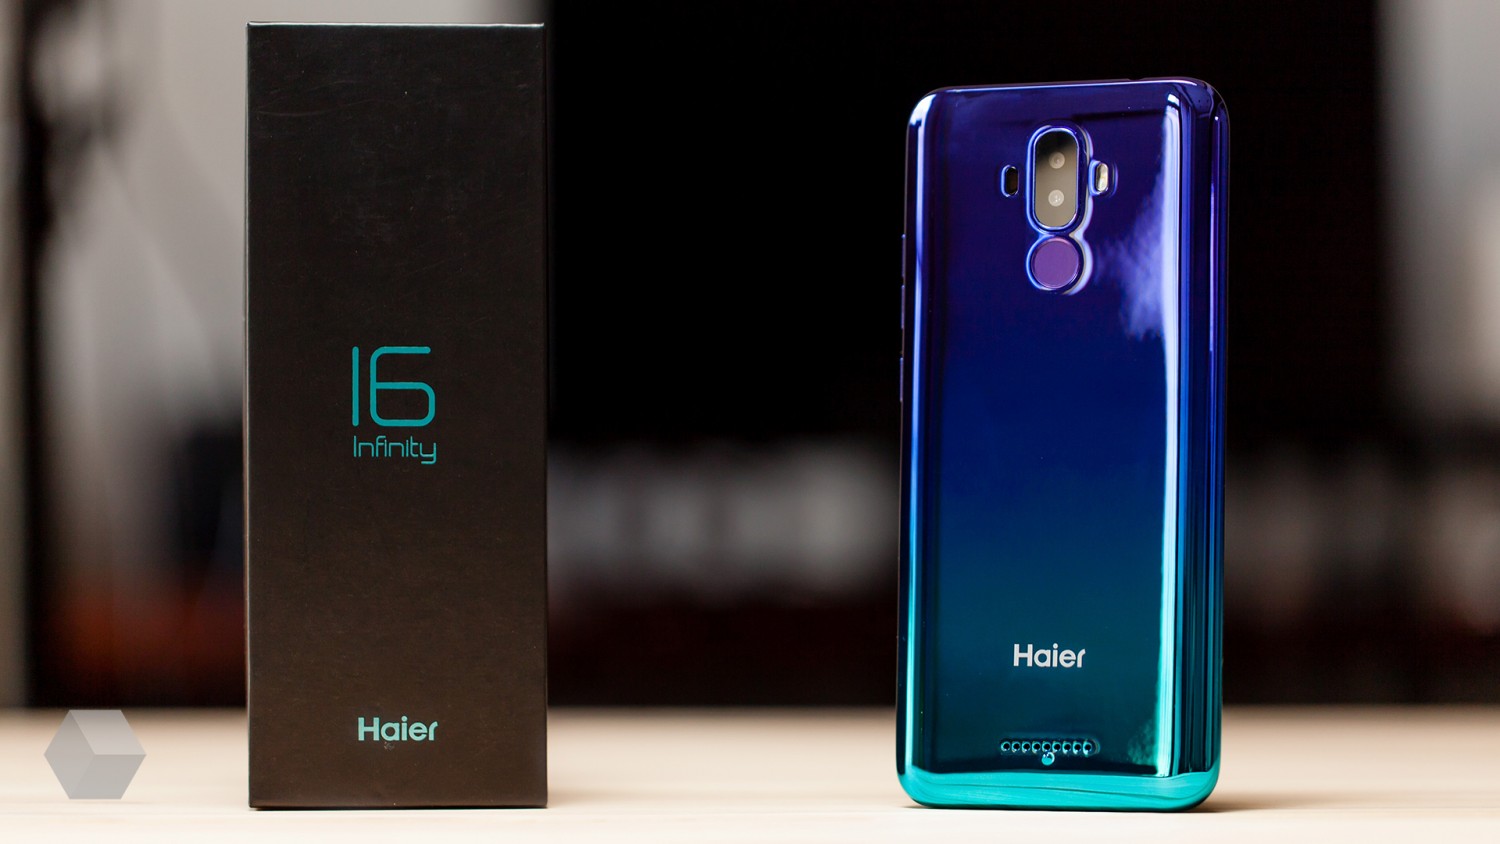 Обзор Haier I6 Infinity. NFC за семь тысяч рублей